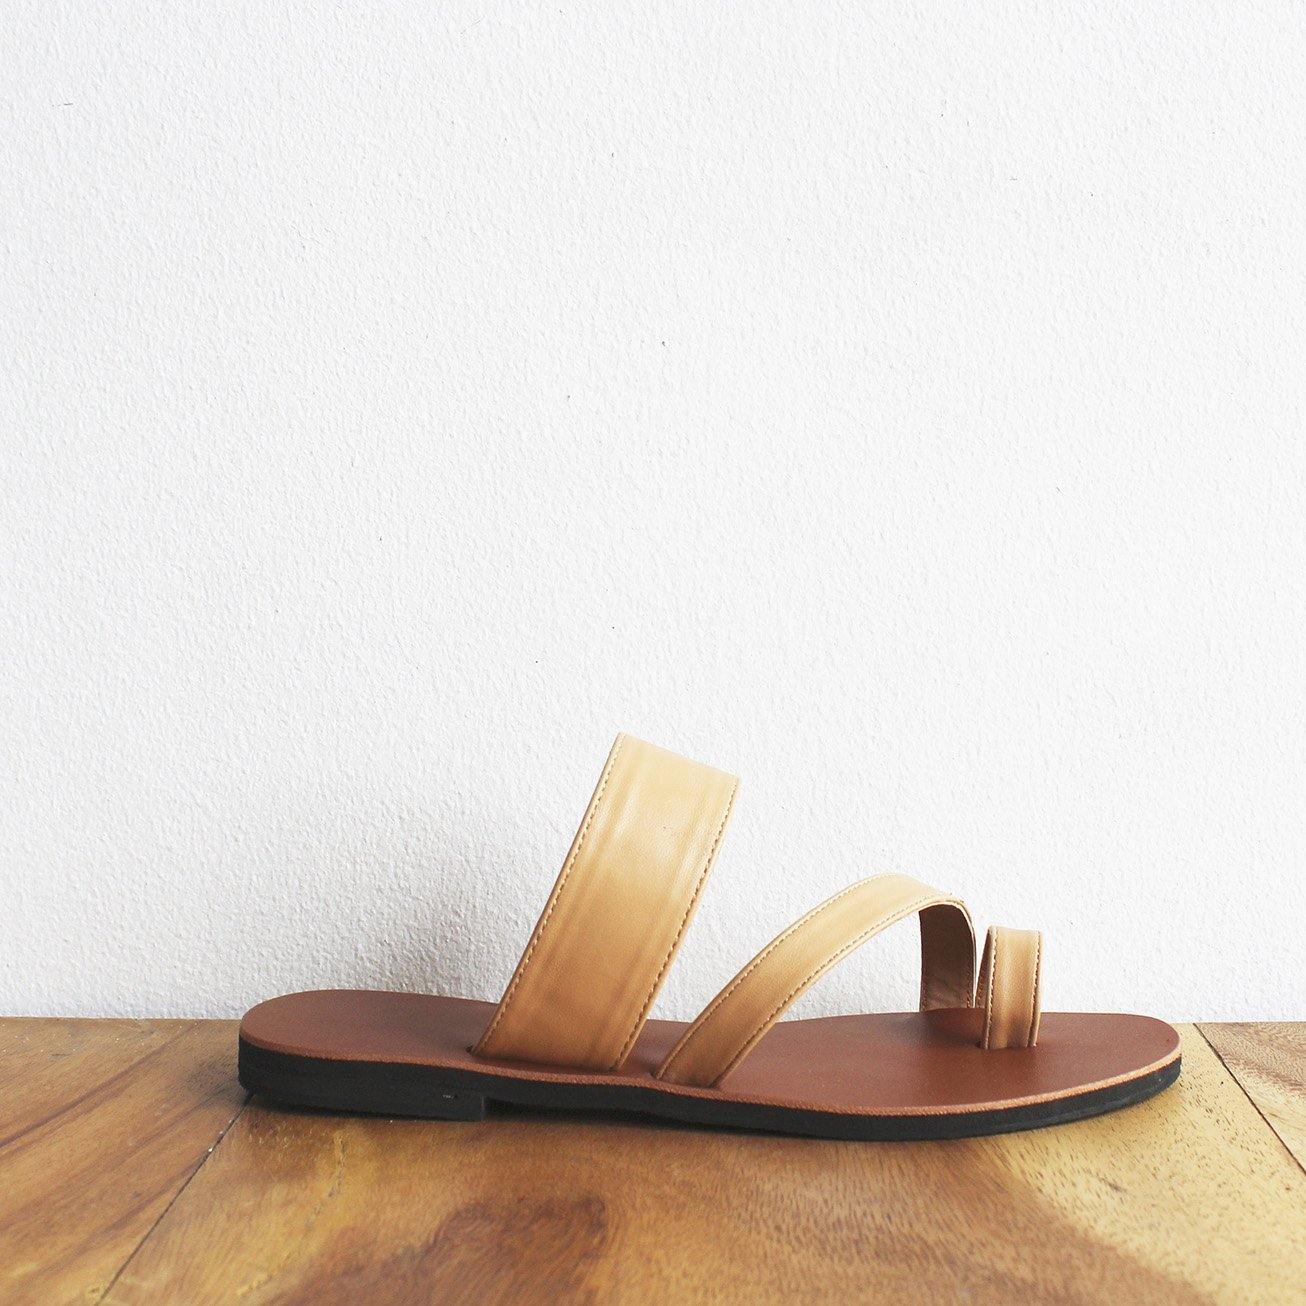 Toe-Strap Sandals (5 pairs per set) - Risque Manufacturing